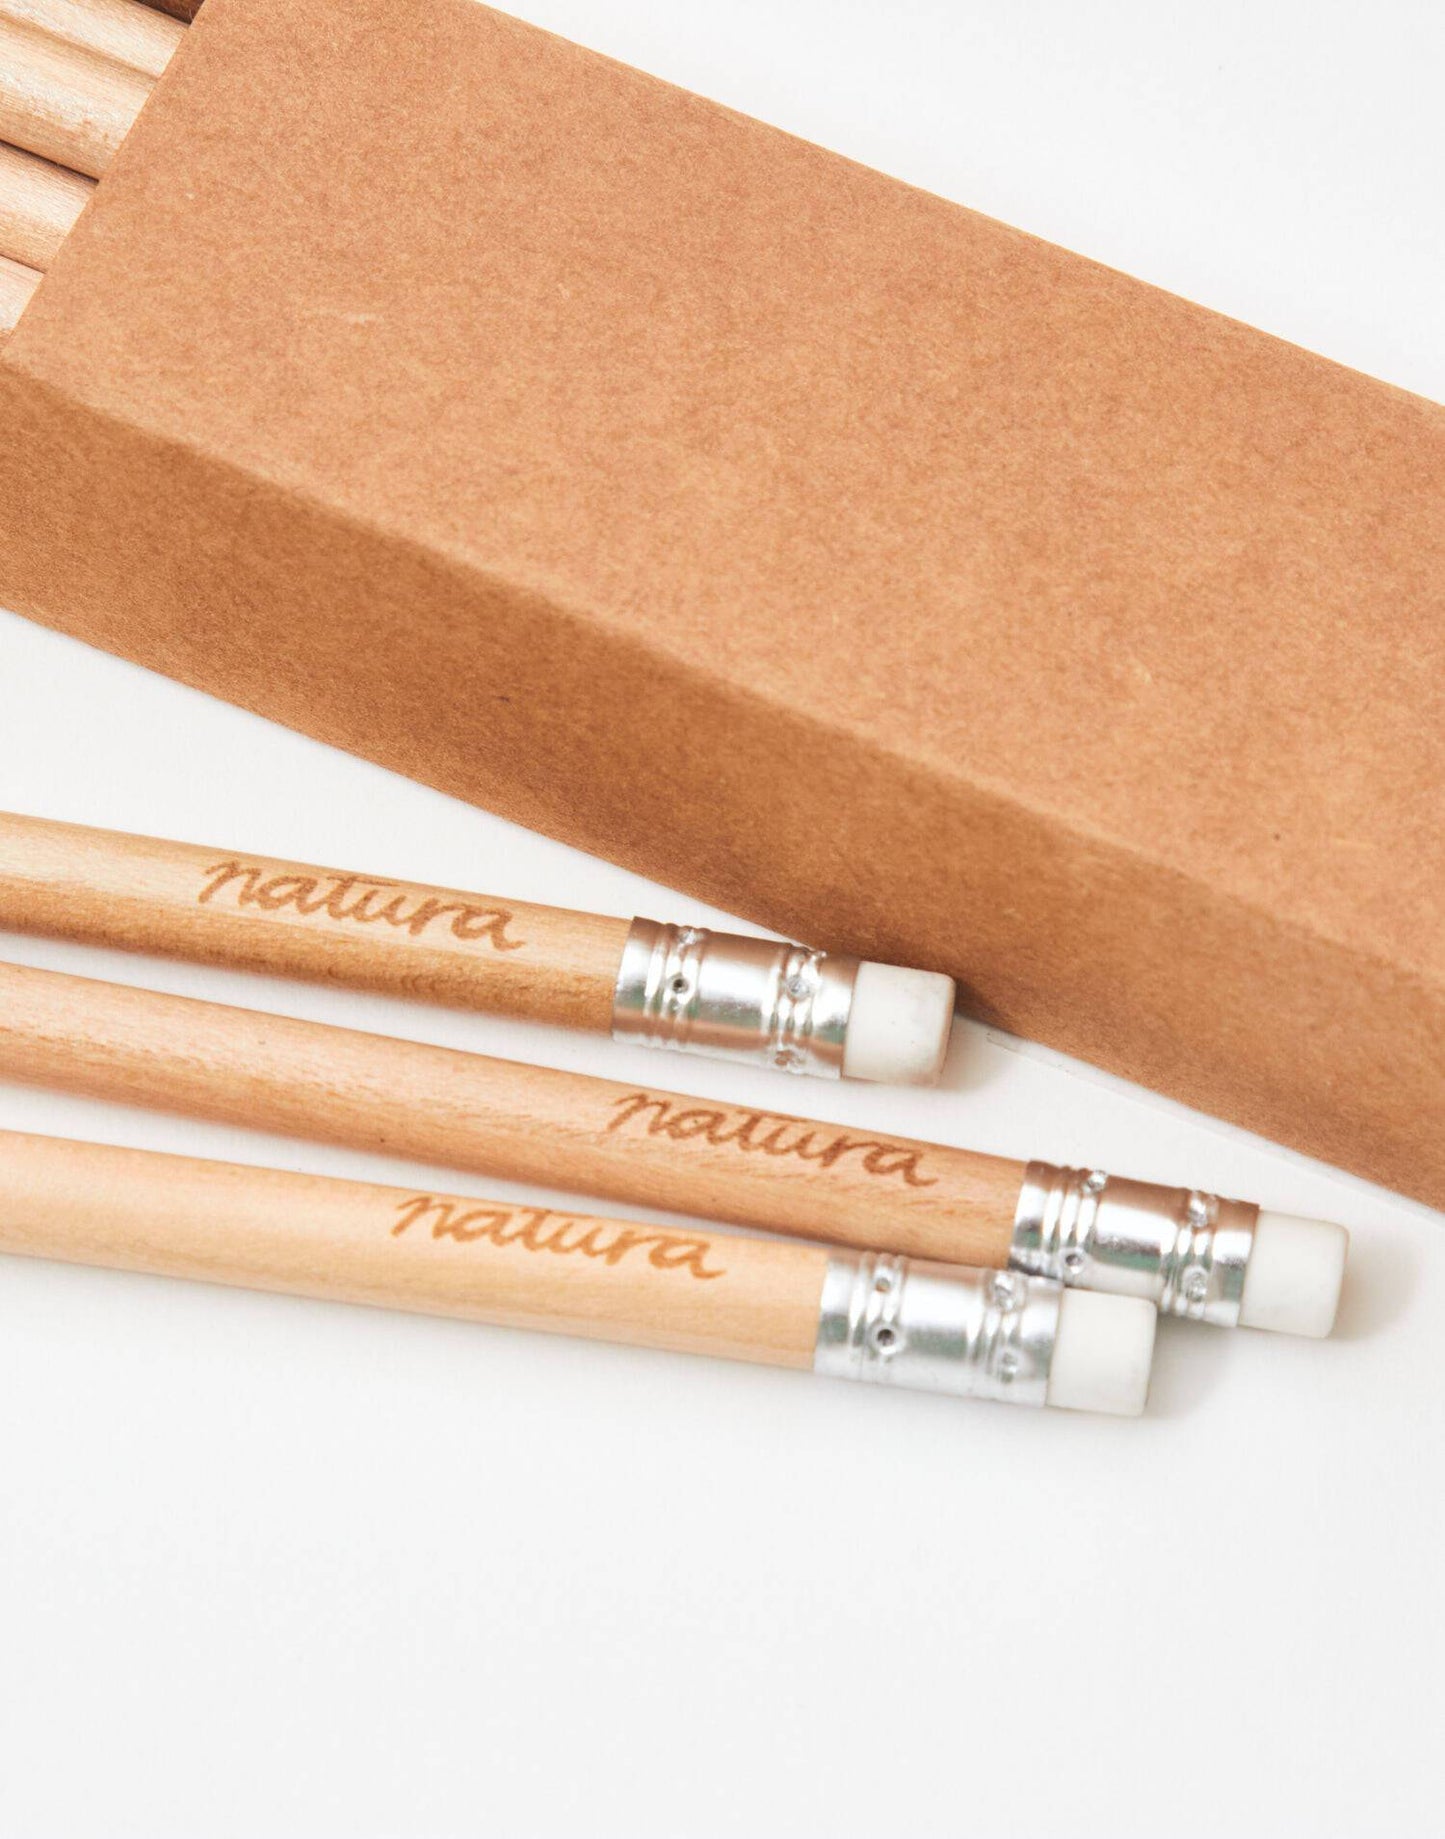 Set of 12 HB pencils